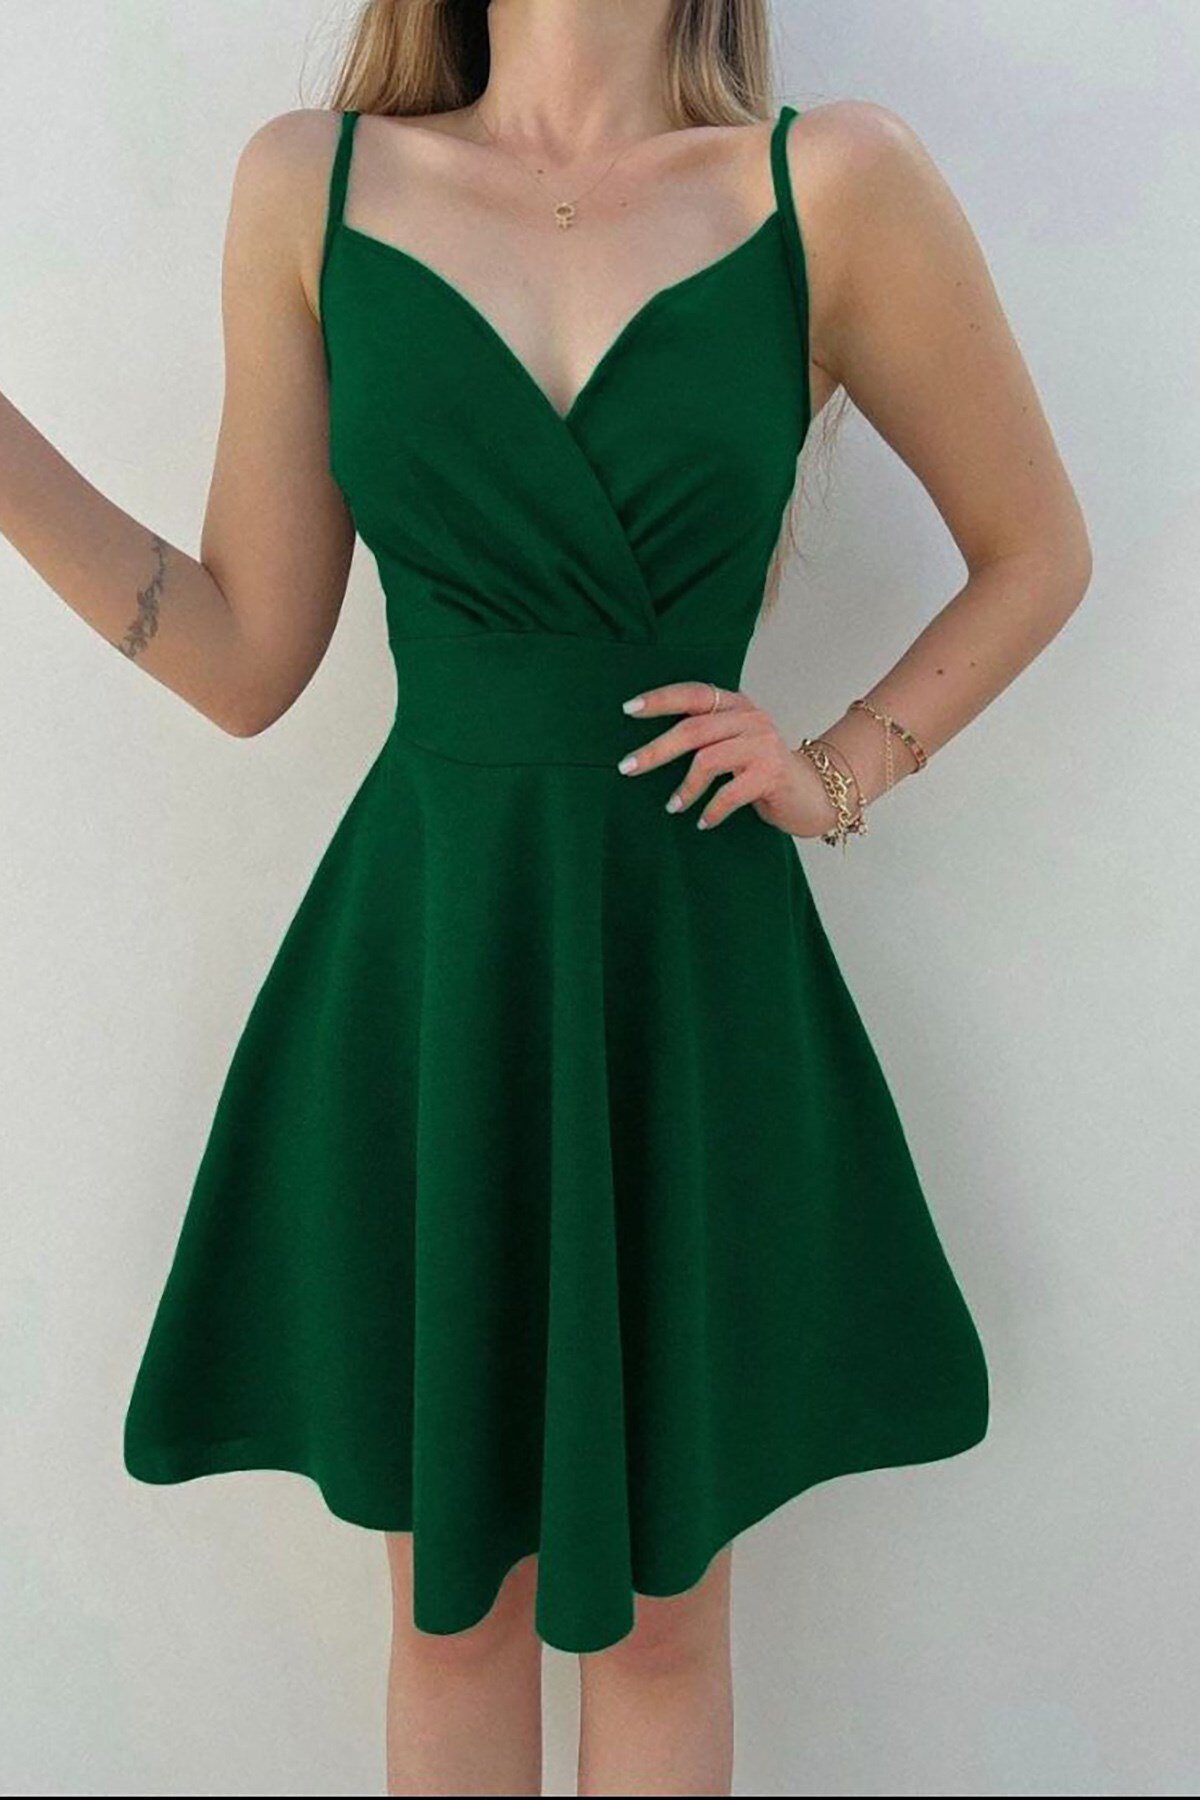 Deafox Yeşil Krep Kumaş İnce Askılı Mini Kloş Elbise